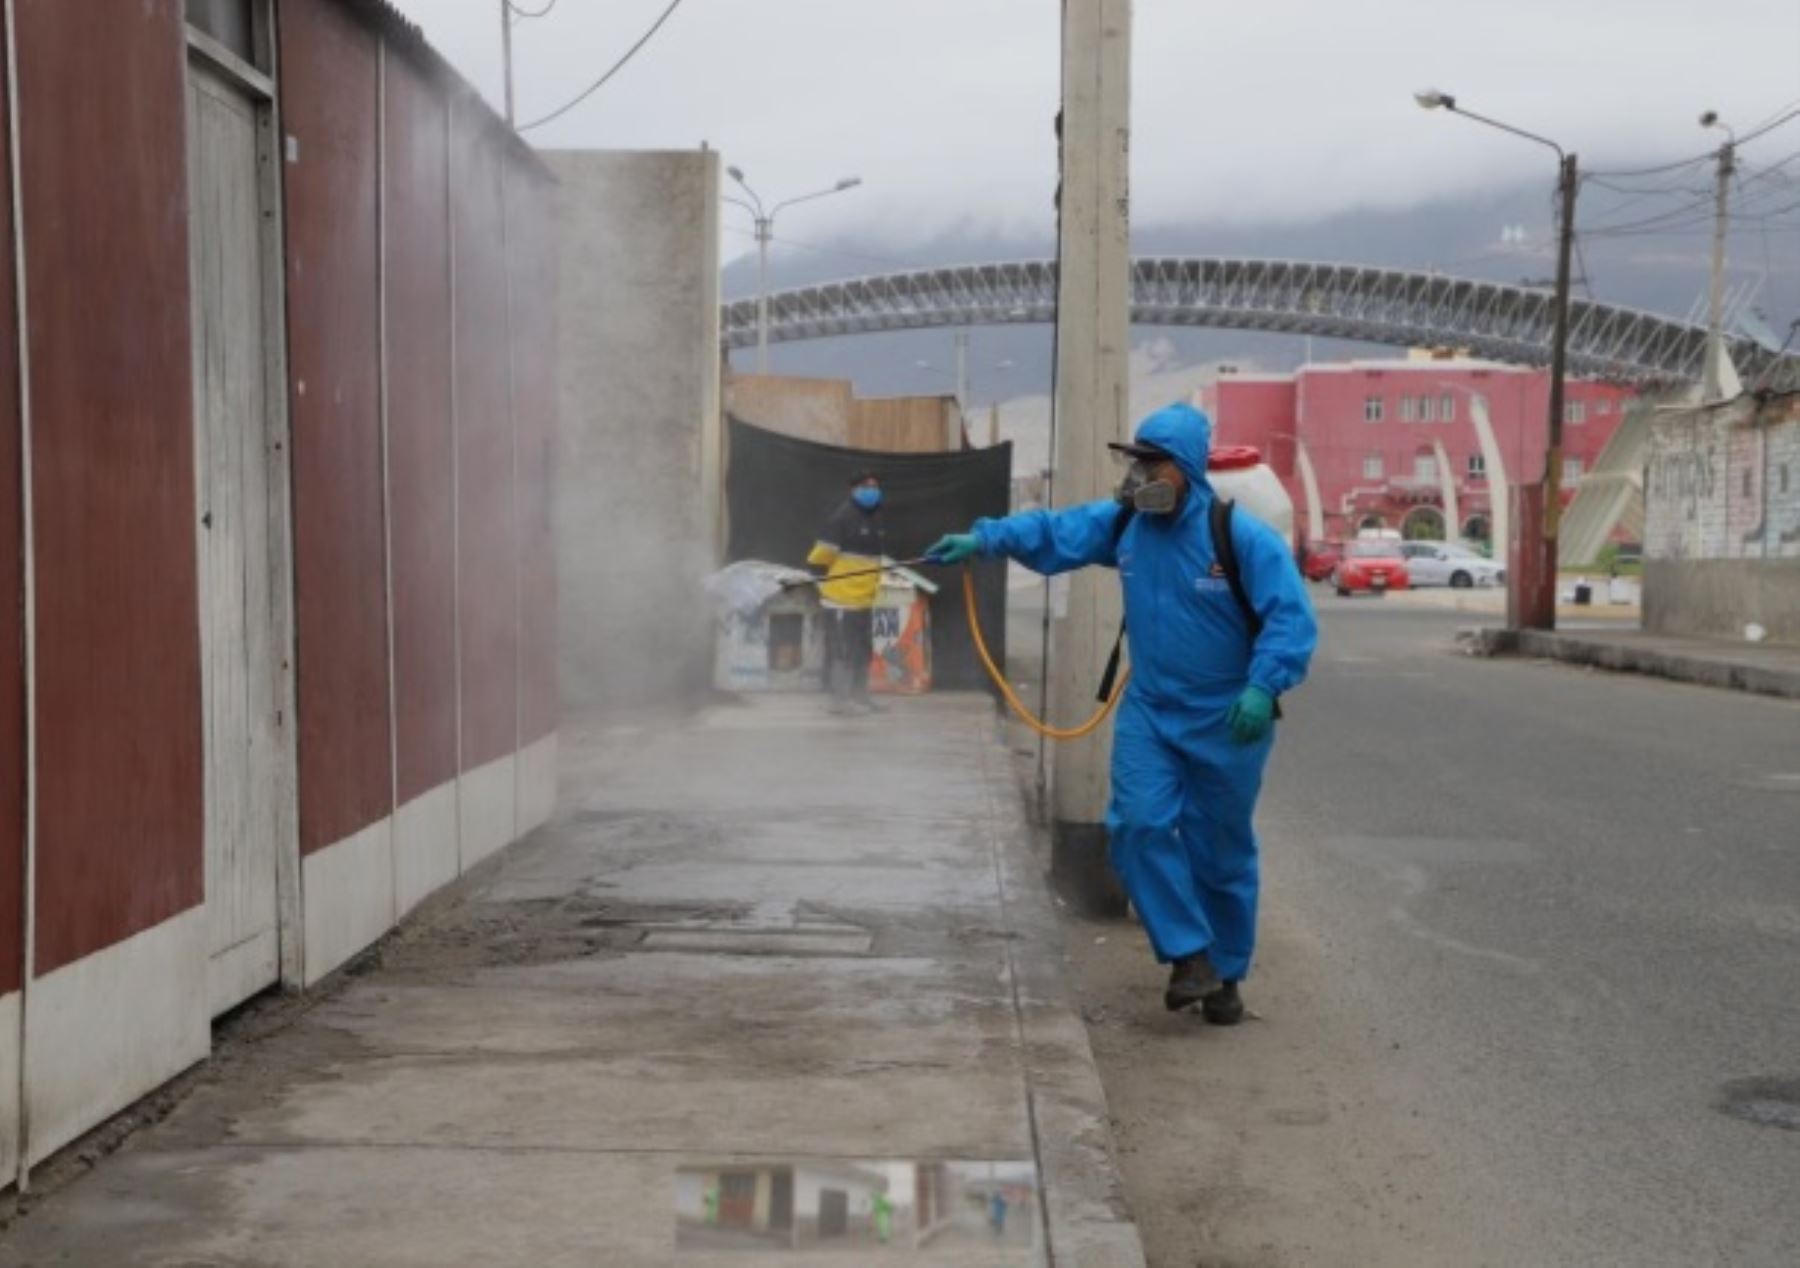 La Municipalidad Provincial del Santa ejecutó una jornada de desinfección de calles en más de 30 pueblos de Chimbote y Nuevo Chimbote, a fin de evitar contagios frente a la pandemia del nuevo coronavirus.